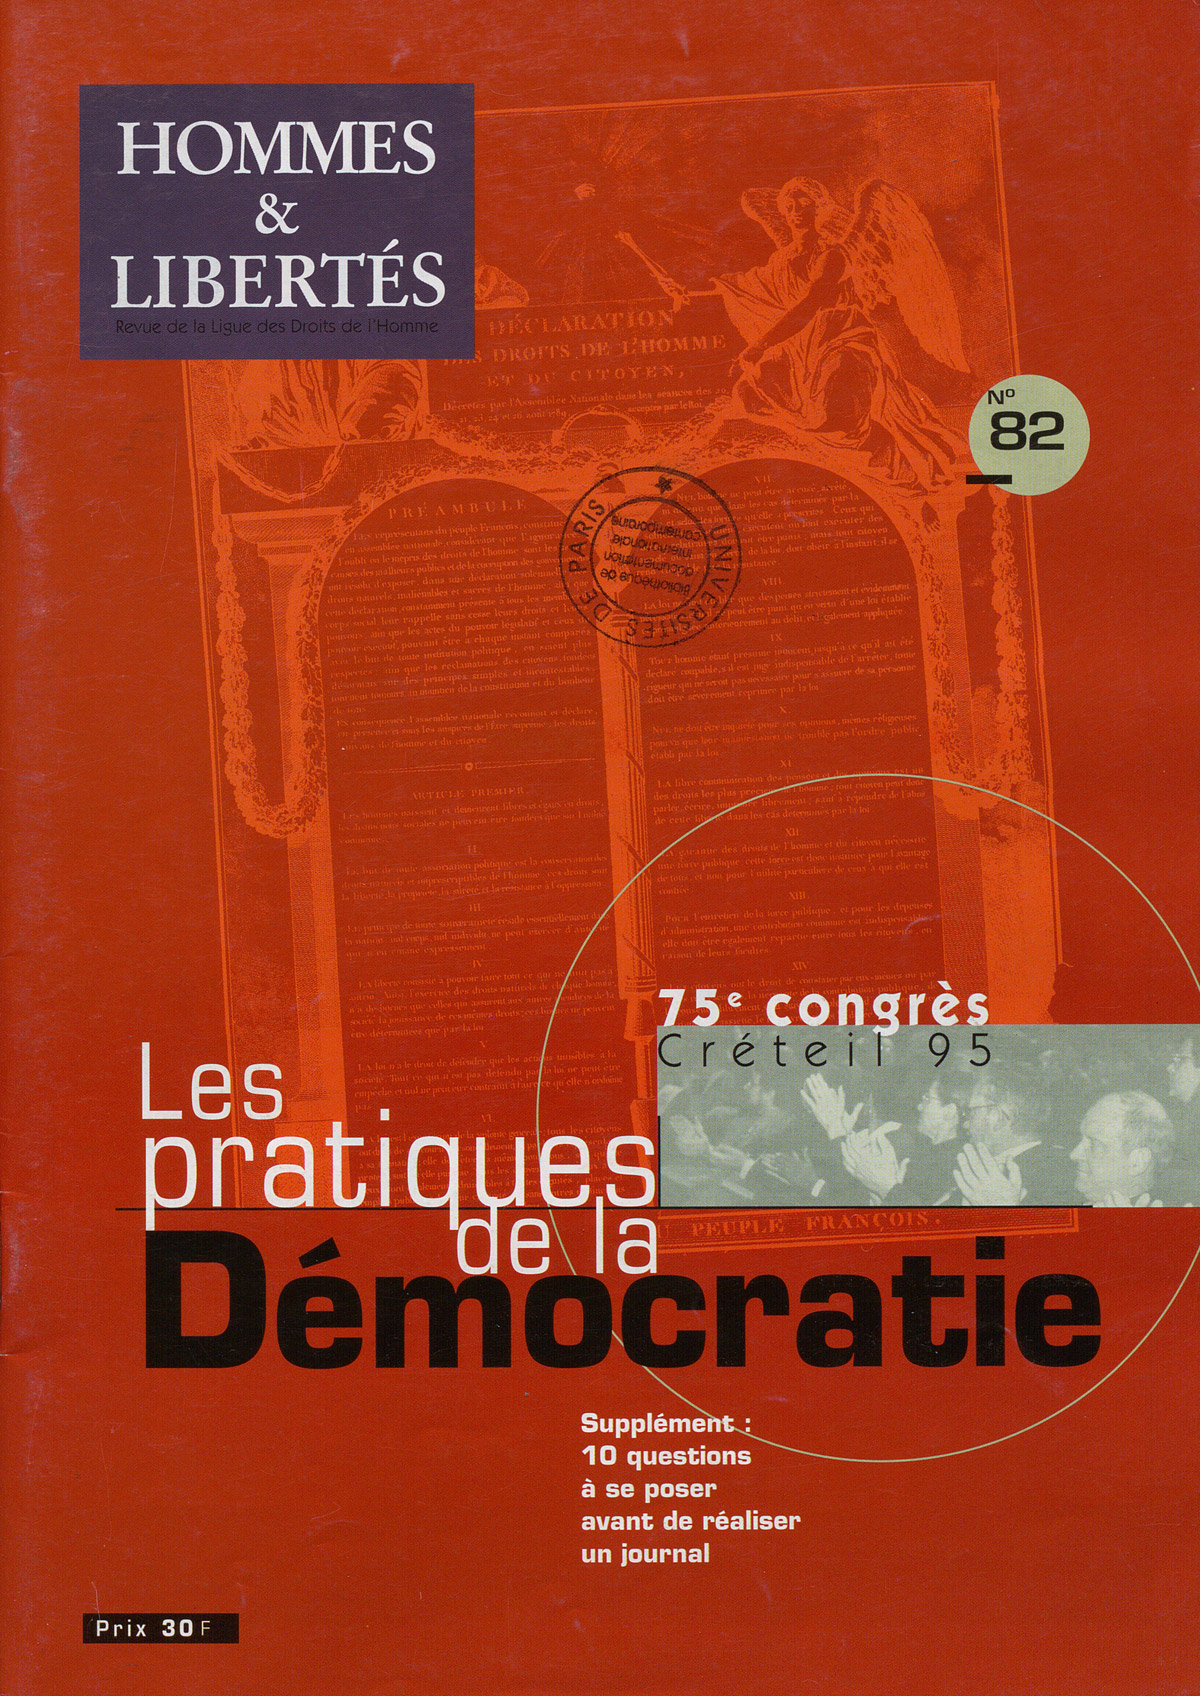 75e Congrès : Les pratiques de la Démocratie in Hommes & Libertés n°82, 1995